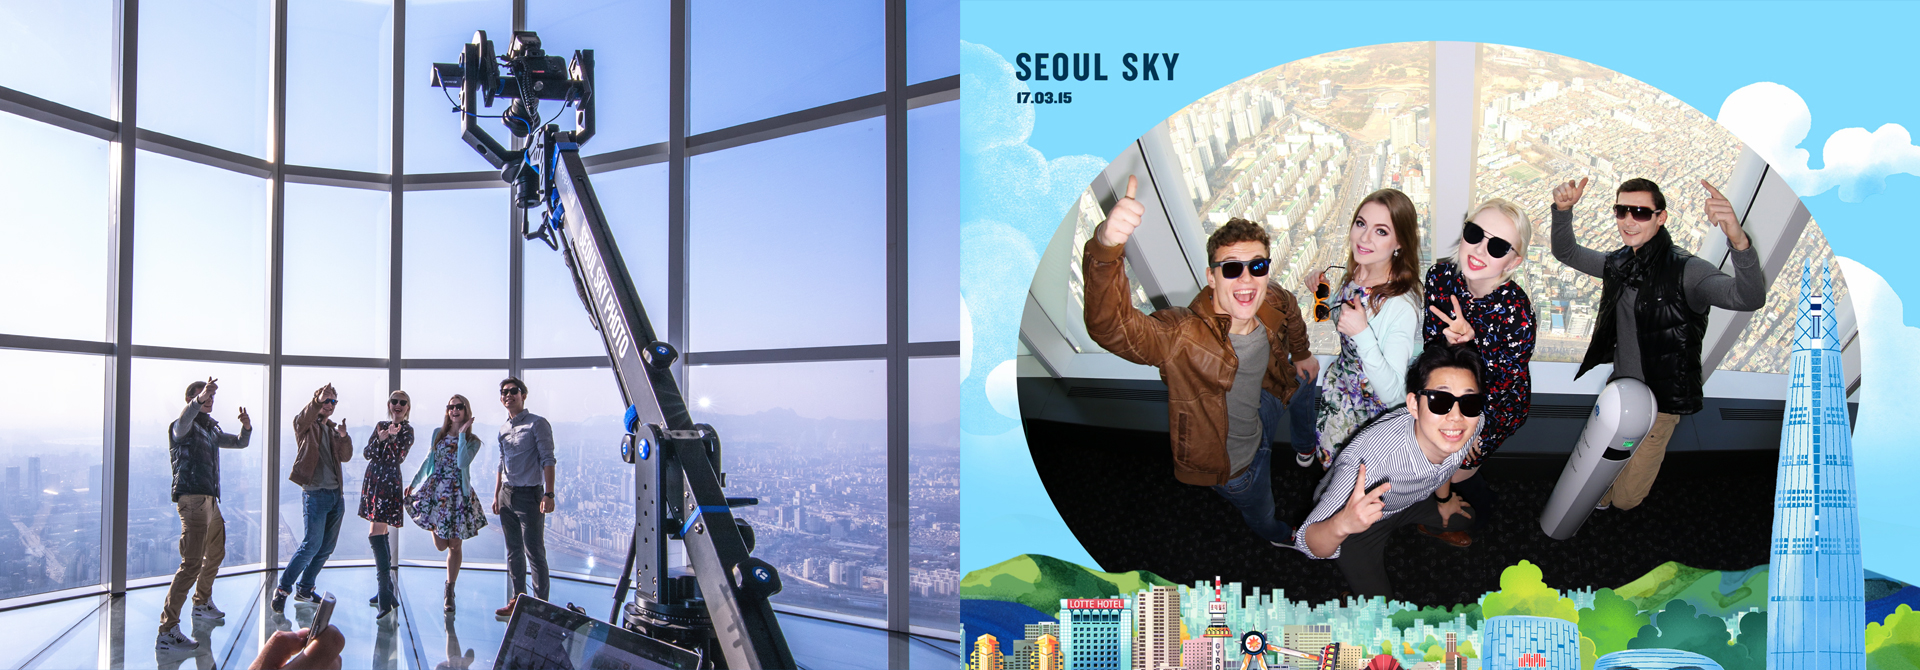 Seoul Sky Panorama